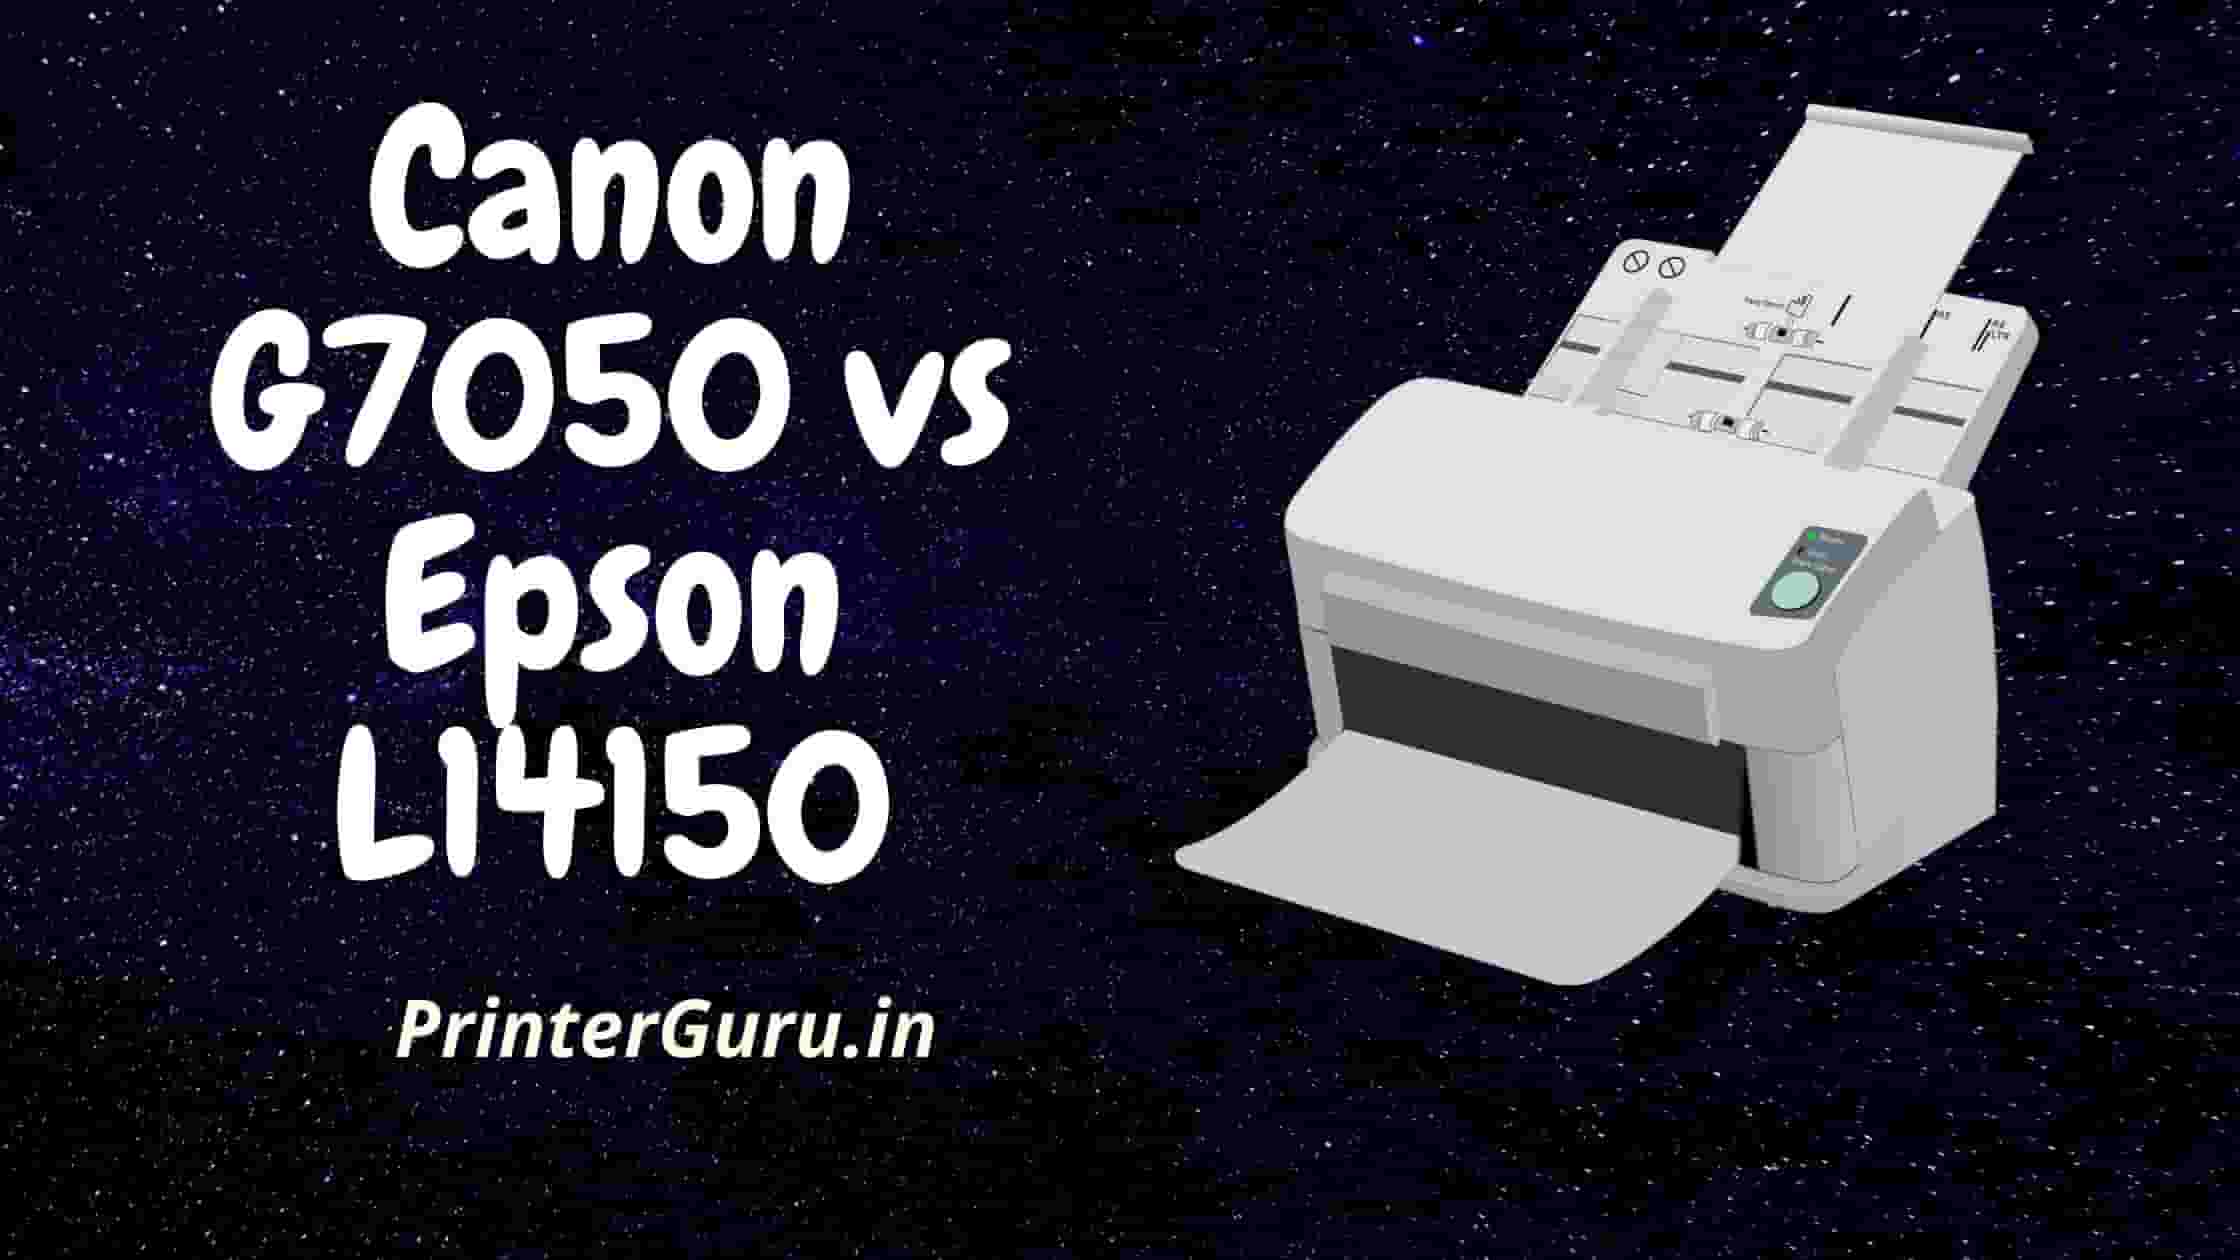 Canon G7050 vs Epson L14150